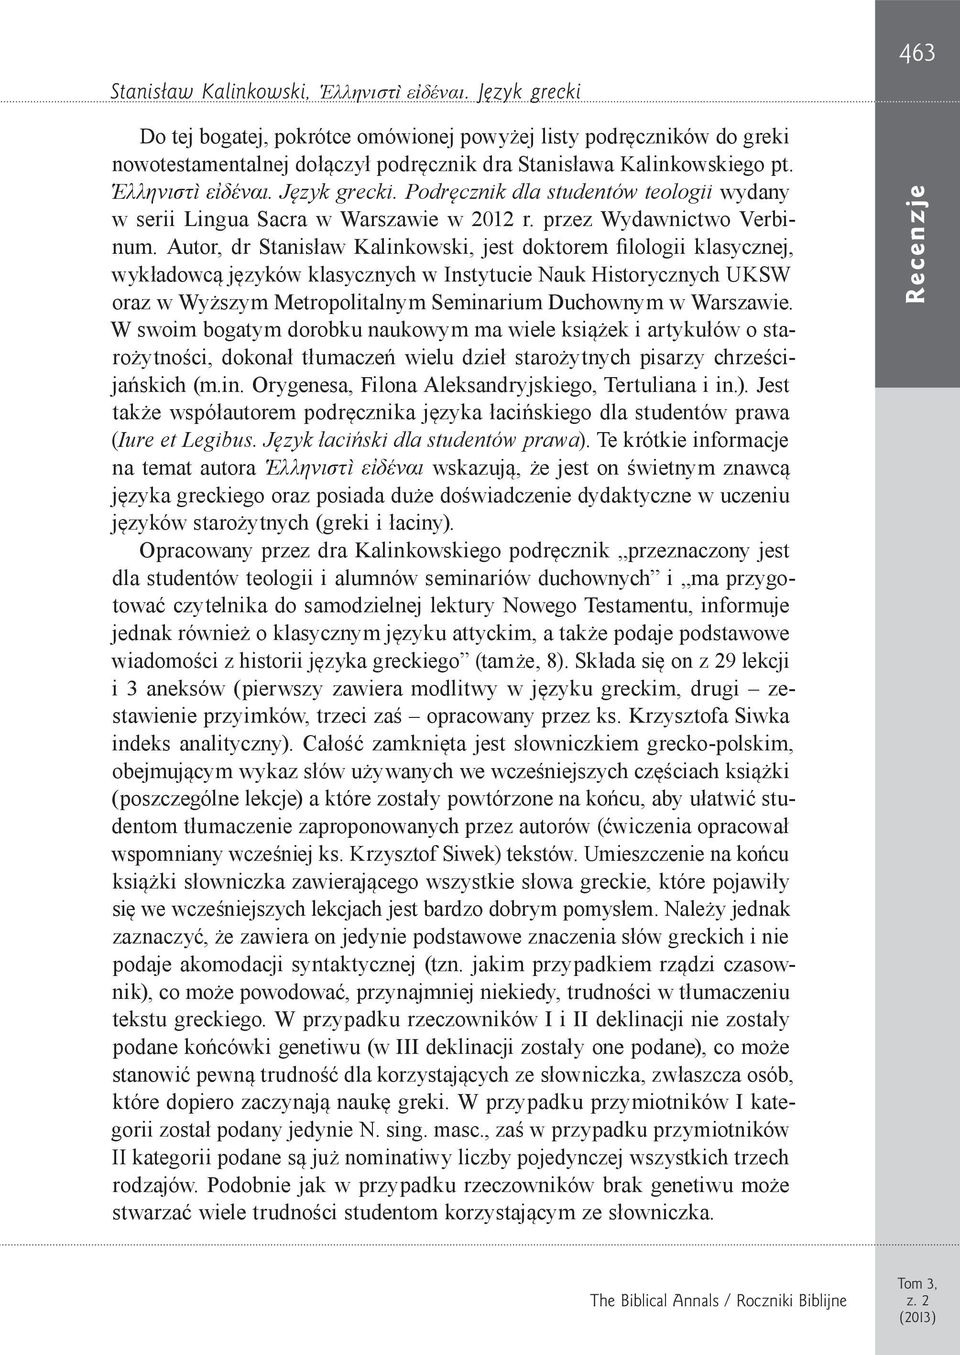 Podręcznik dla studentów teologii wydany w serii Lingua Sacra w Warszawie w 2012 r. przez Wydawnictwo Verbinum.